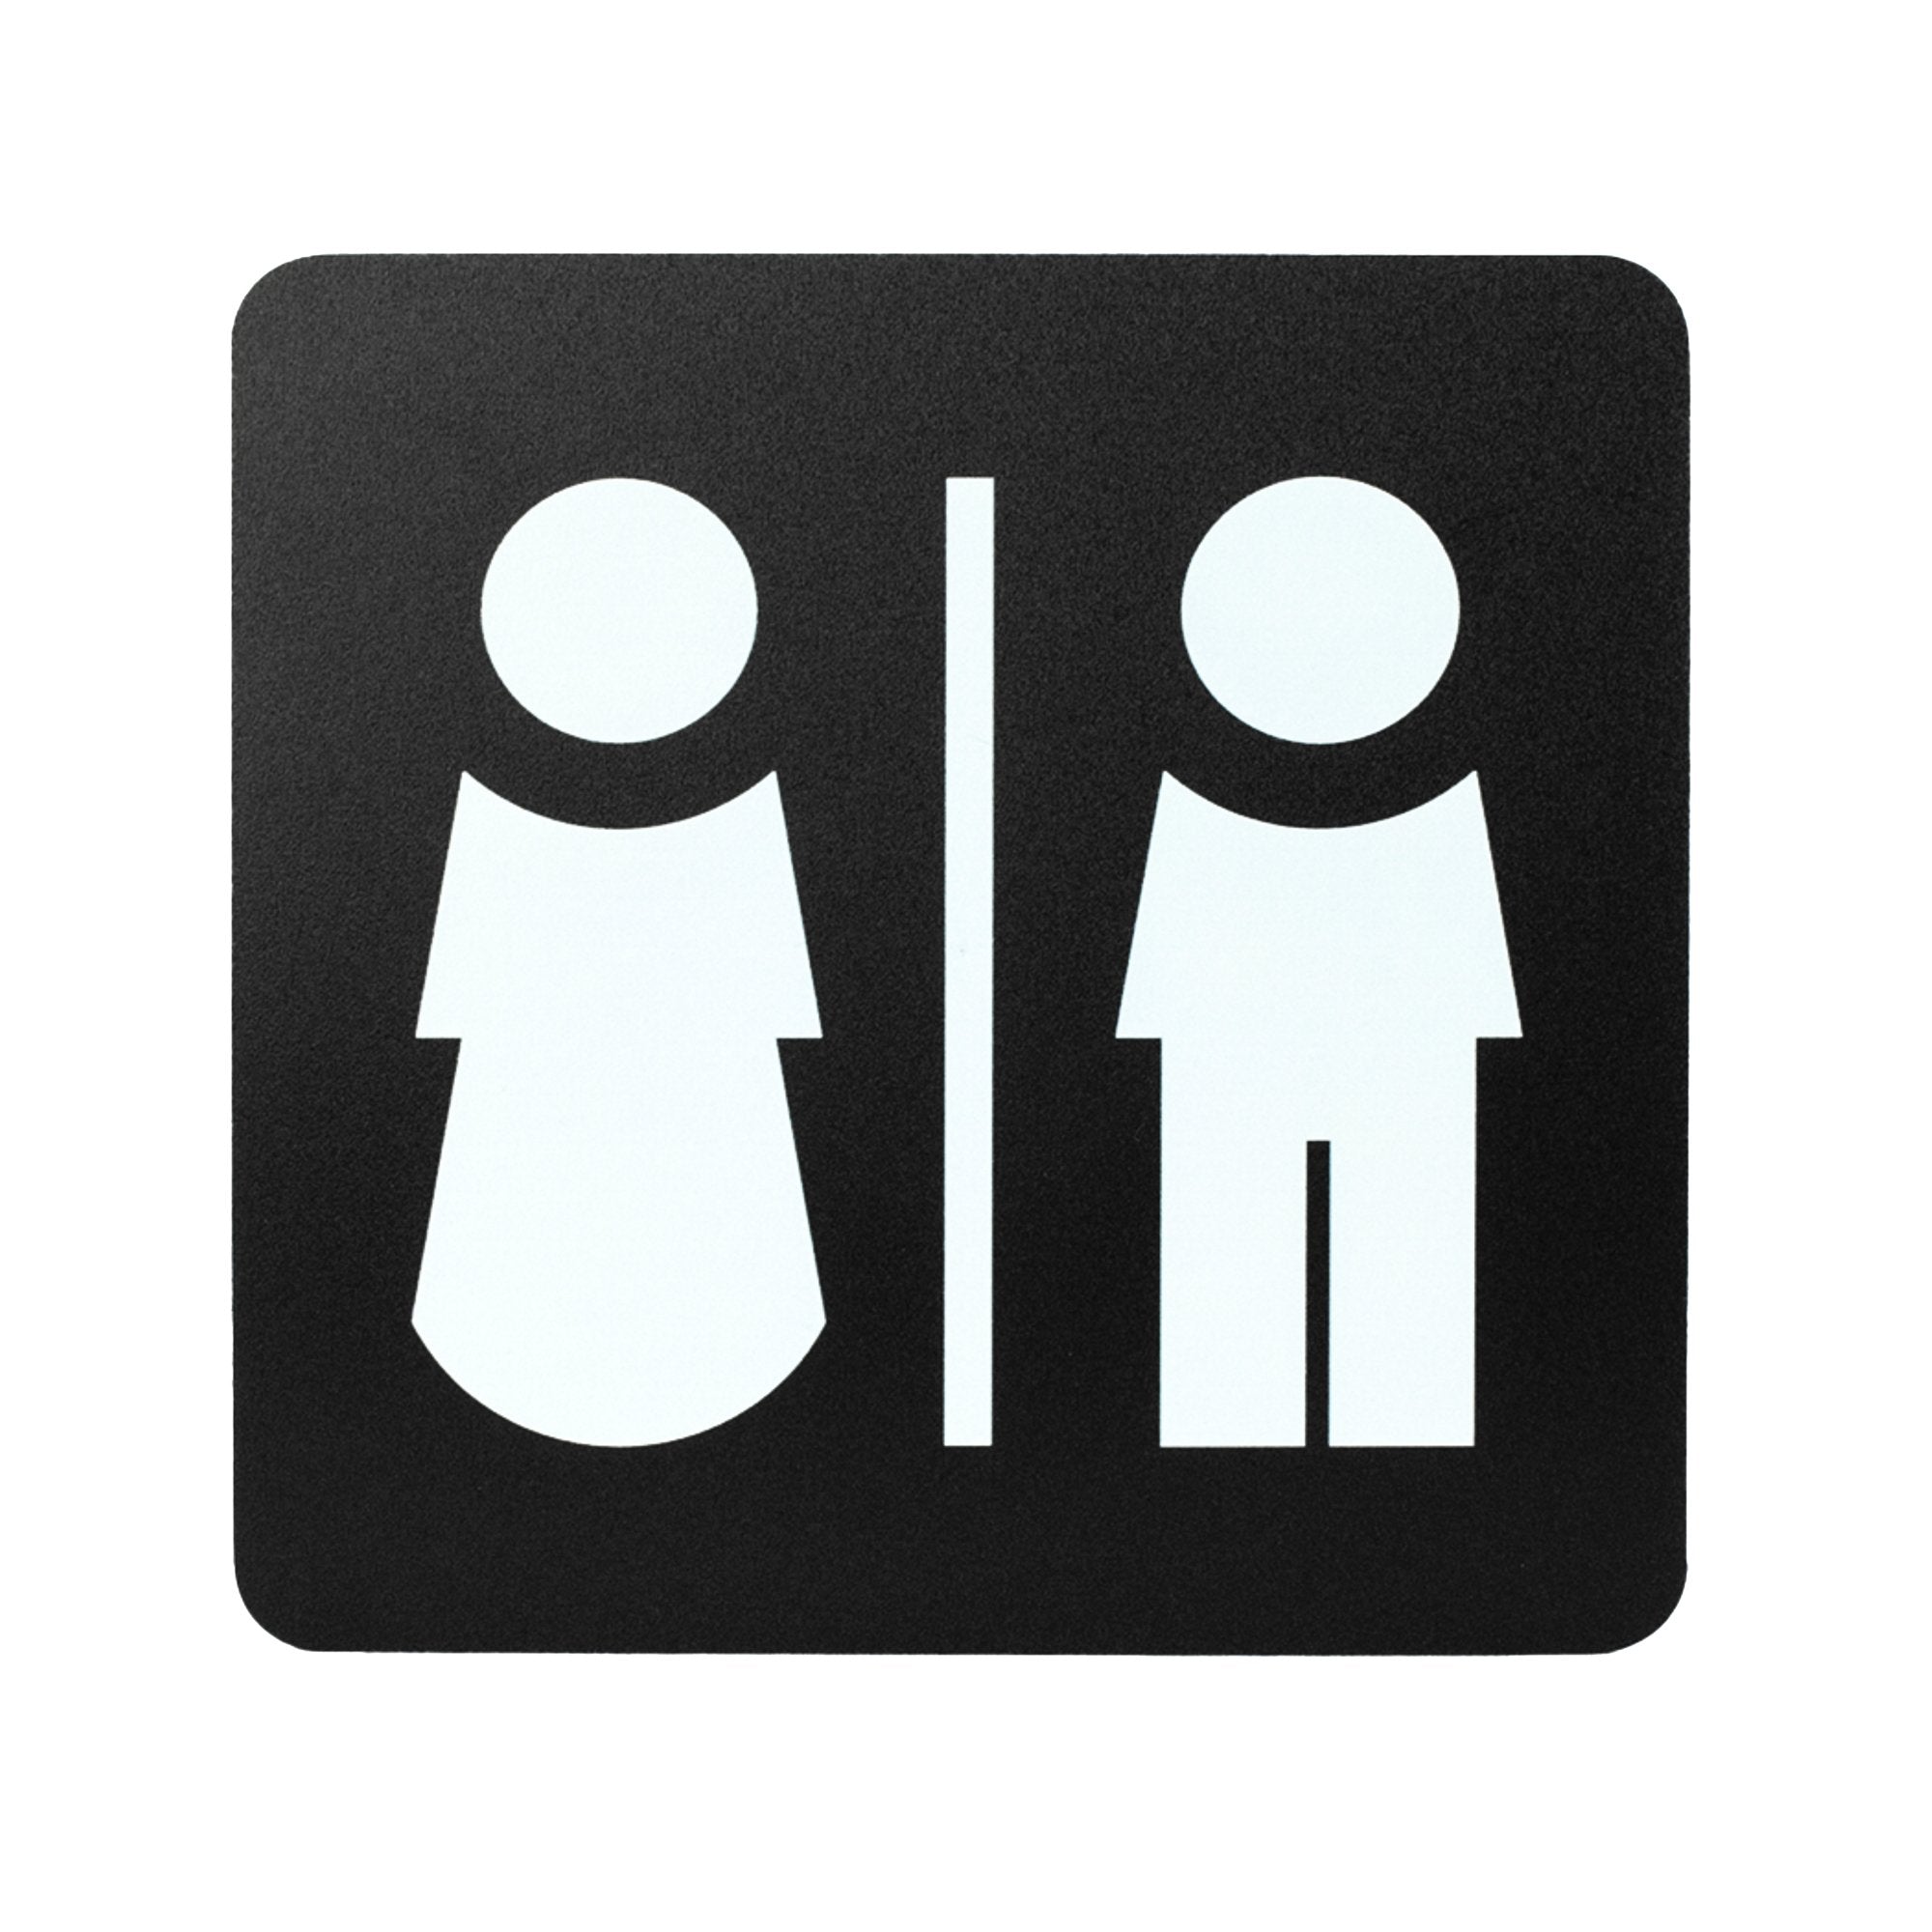 stilcasa-pittogramma-toilette-uomo-donna-16x16cm-pvc-nero-bianco